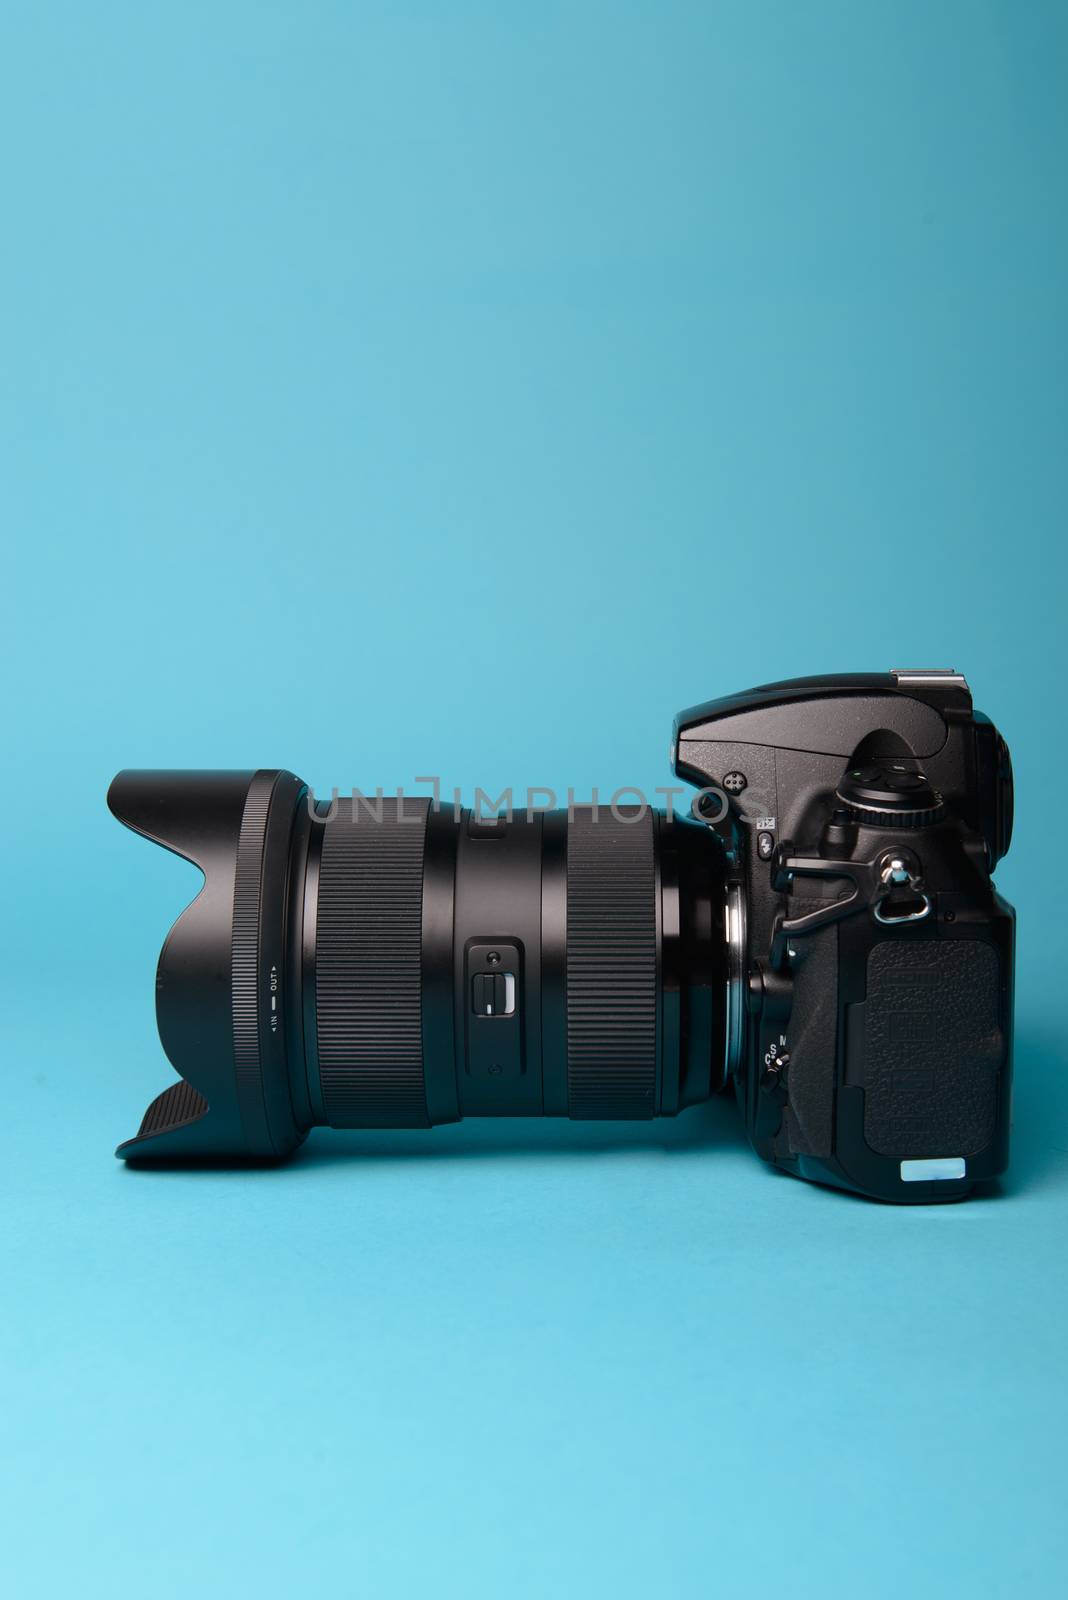 Professional modern DSLR camera against blue background